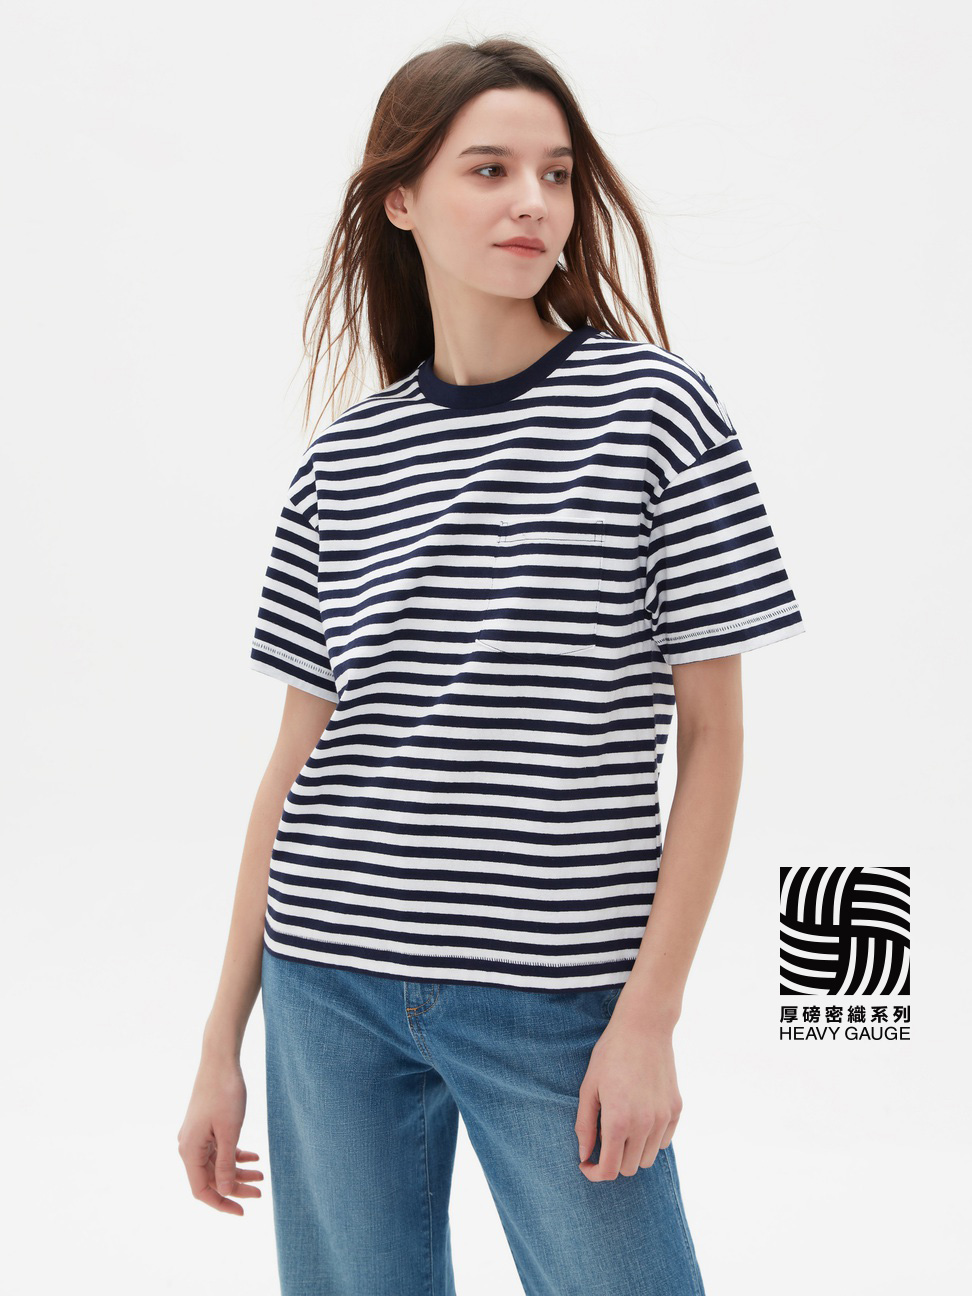 女裝|舒適圓領短袖T恤-條紋海軍藍